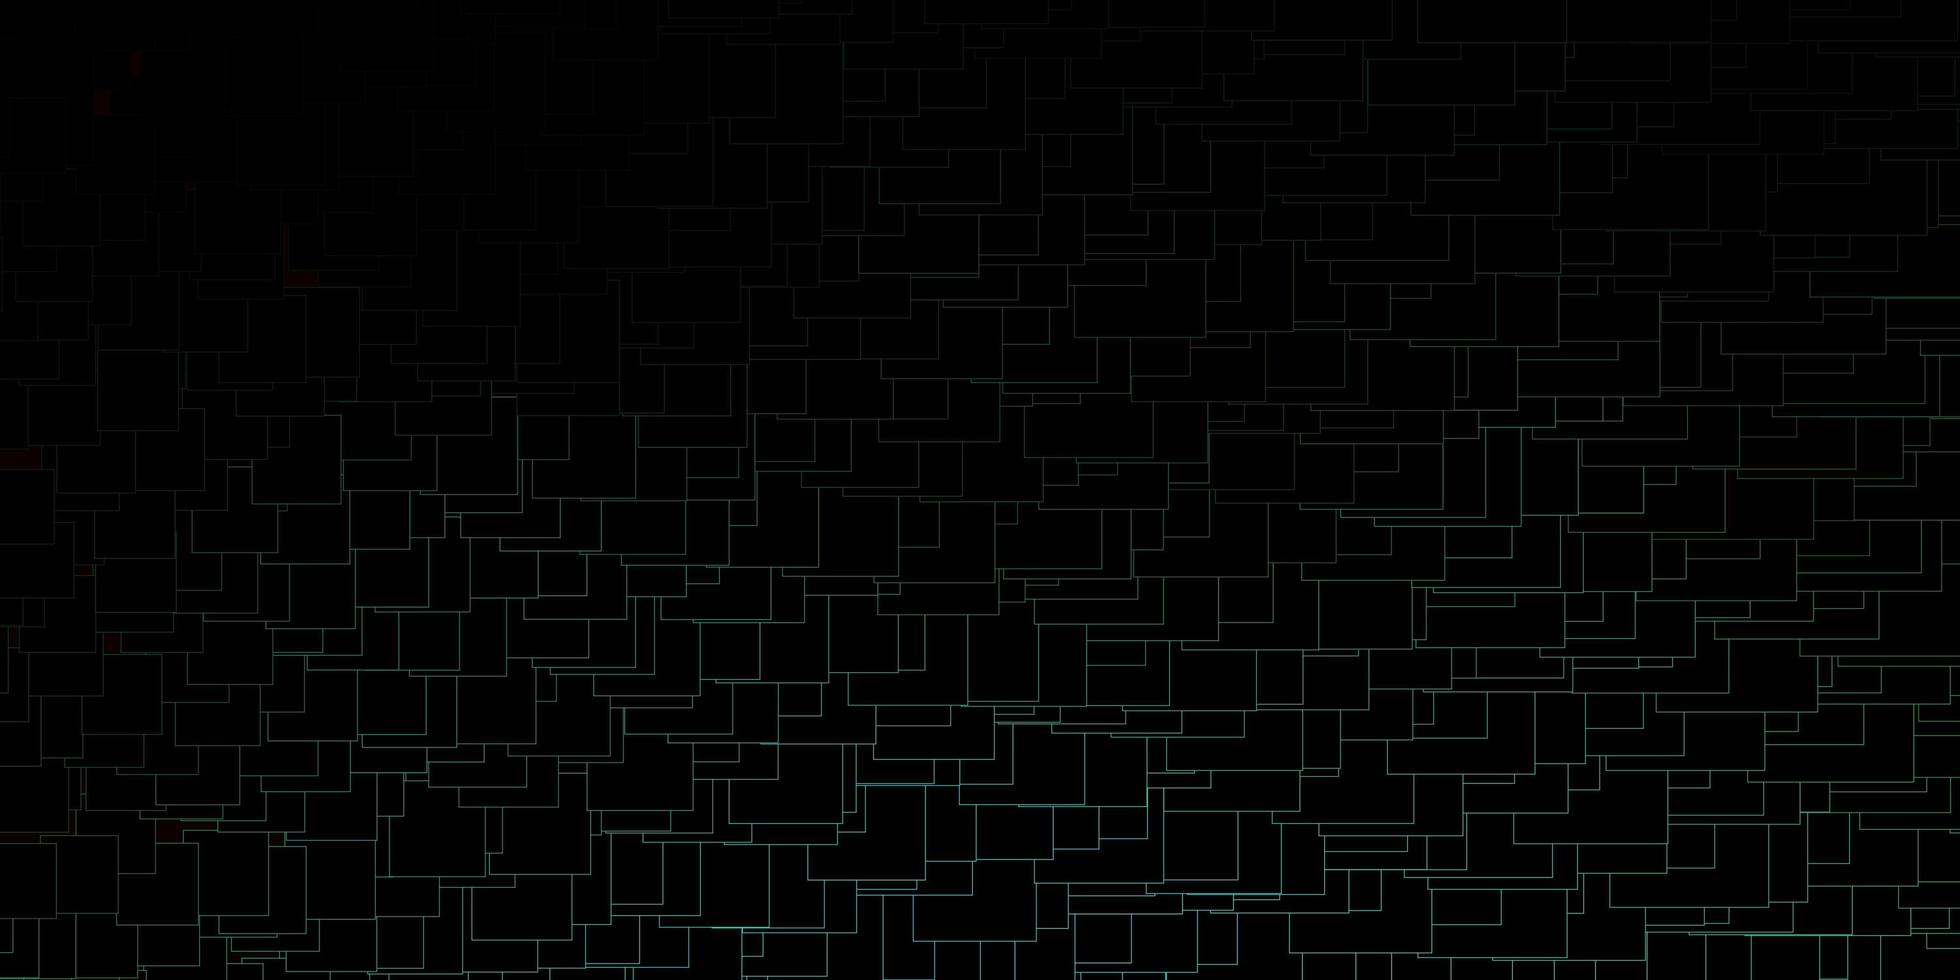 mörkgrön vektormall i rektanglar ny abstrakt illustration med rektangulära former mall för mobiltelefoner vektor